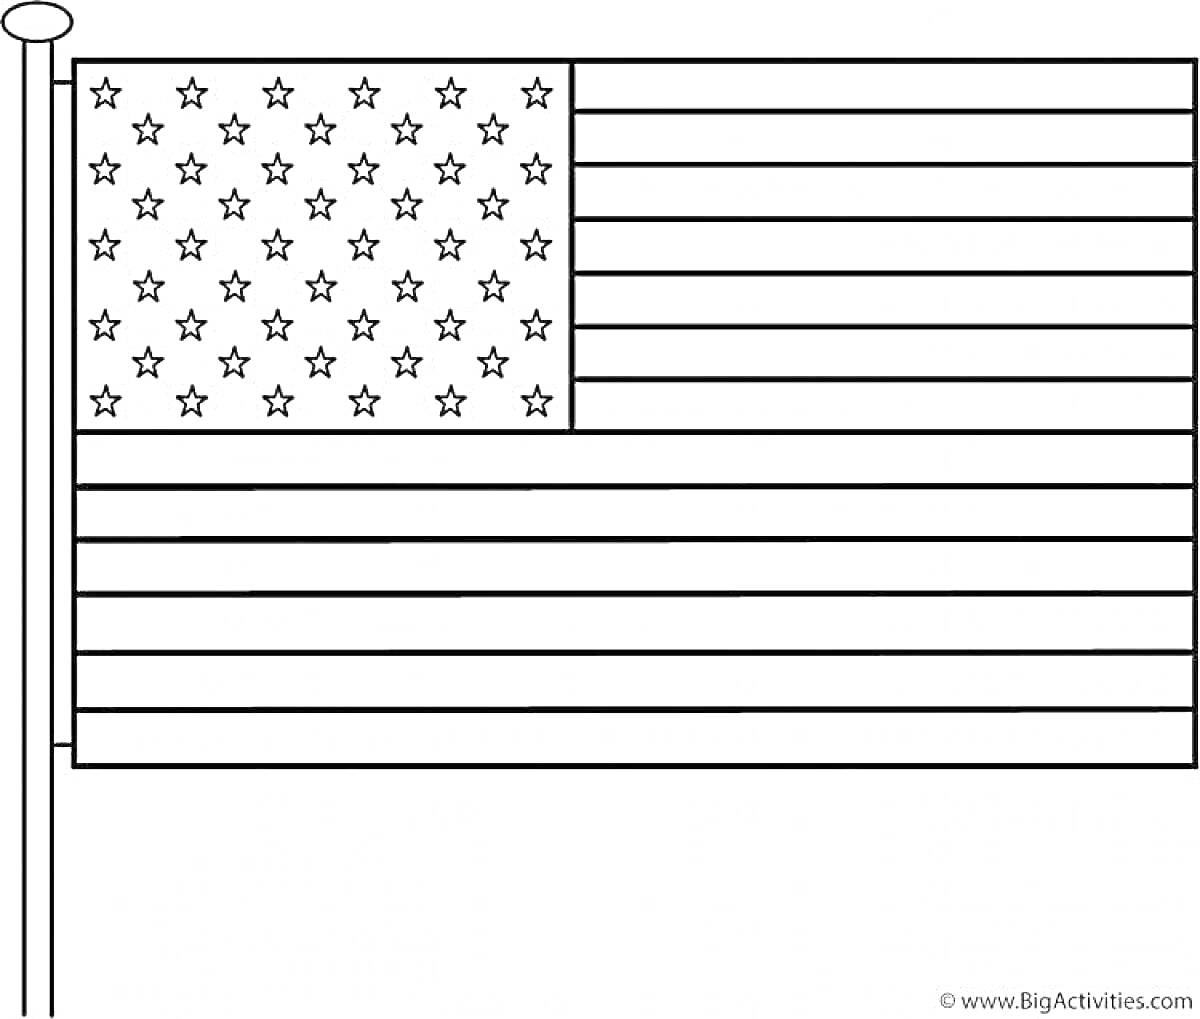 Раскраска Флаг США с 50 звездами и 13 полосами на флагштоке для раскрашивания